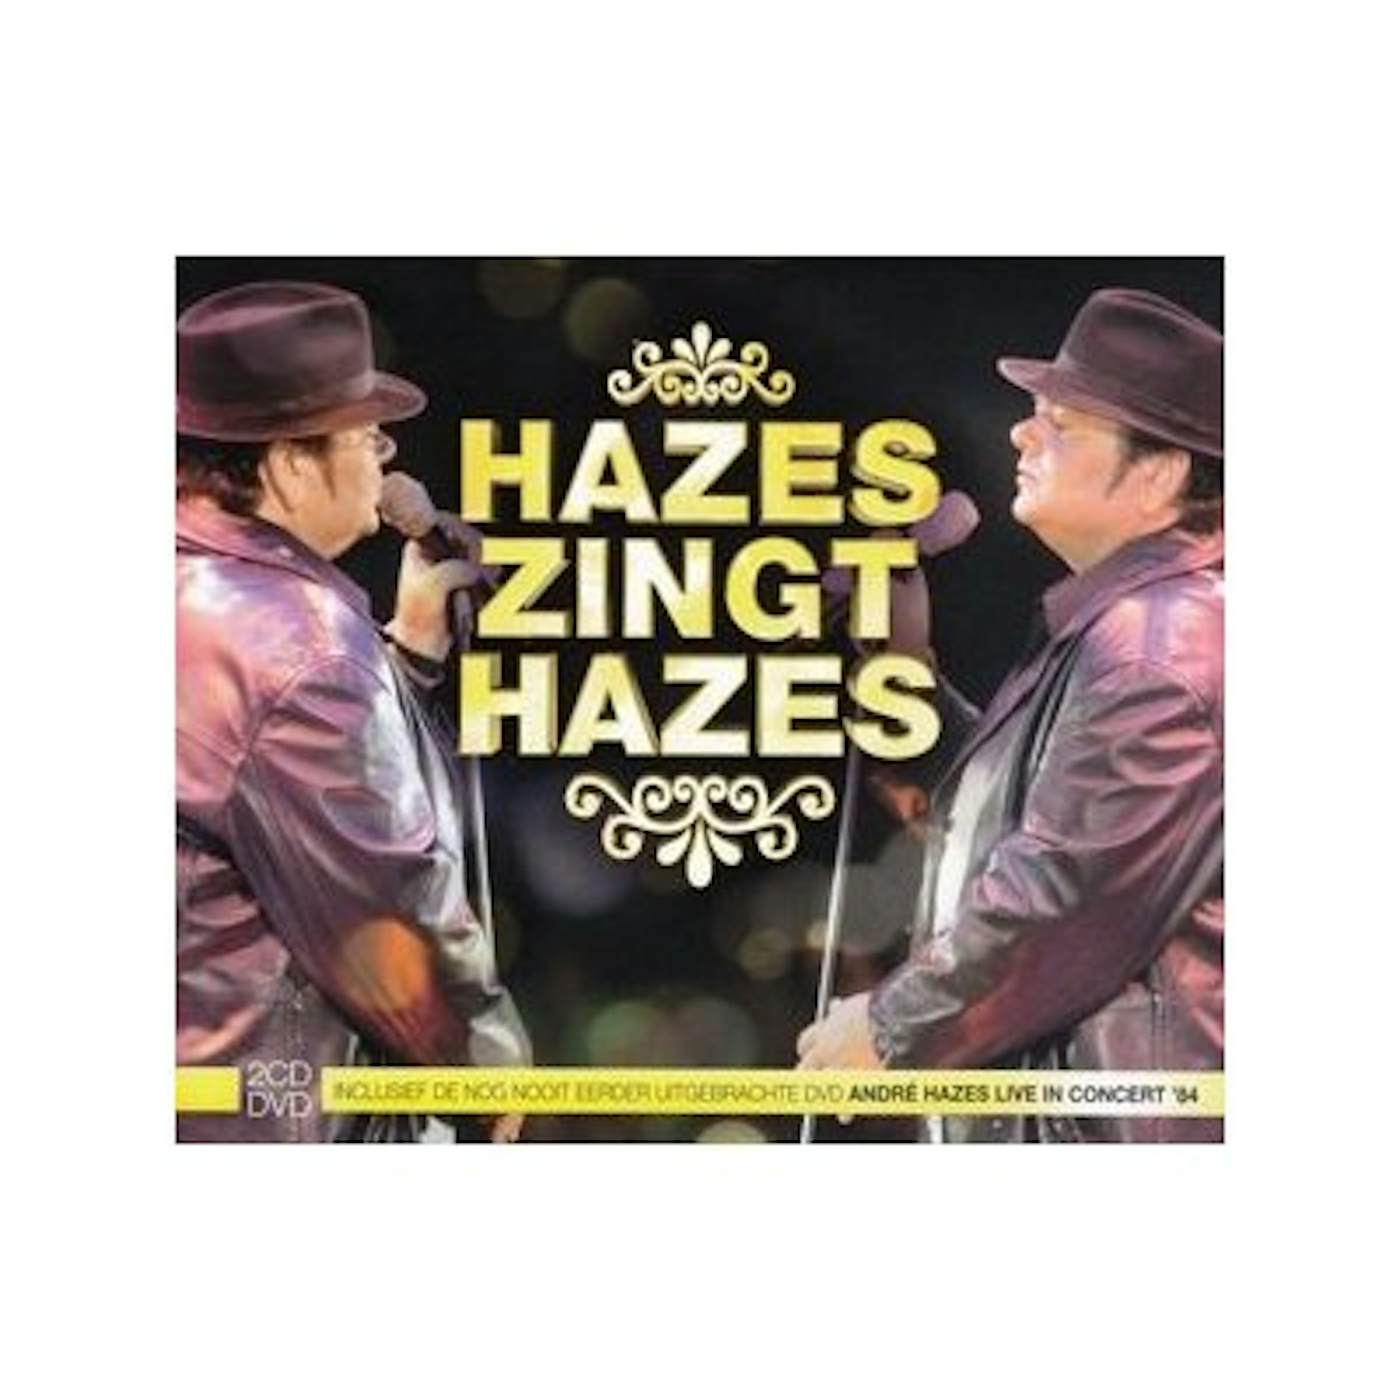 Andre Hazes HAZES ZINGT HAZES CD